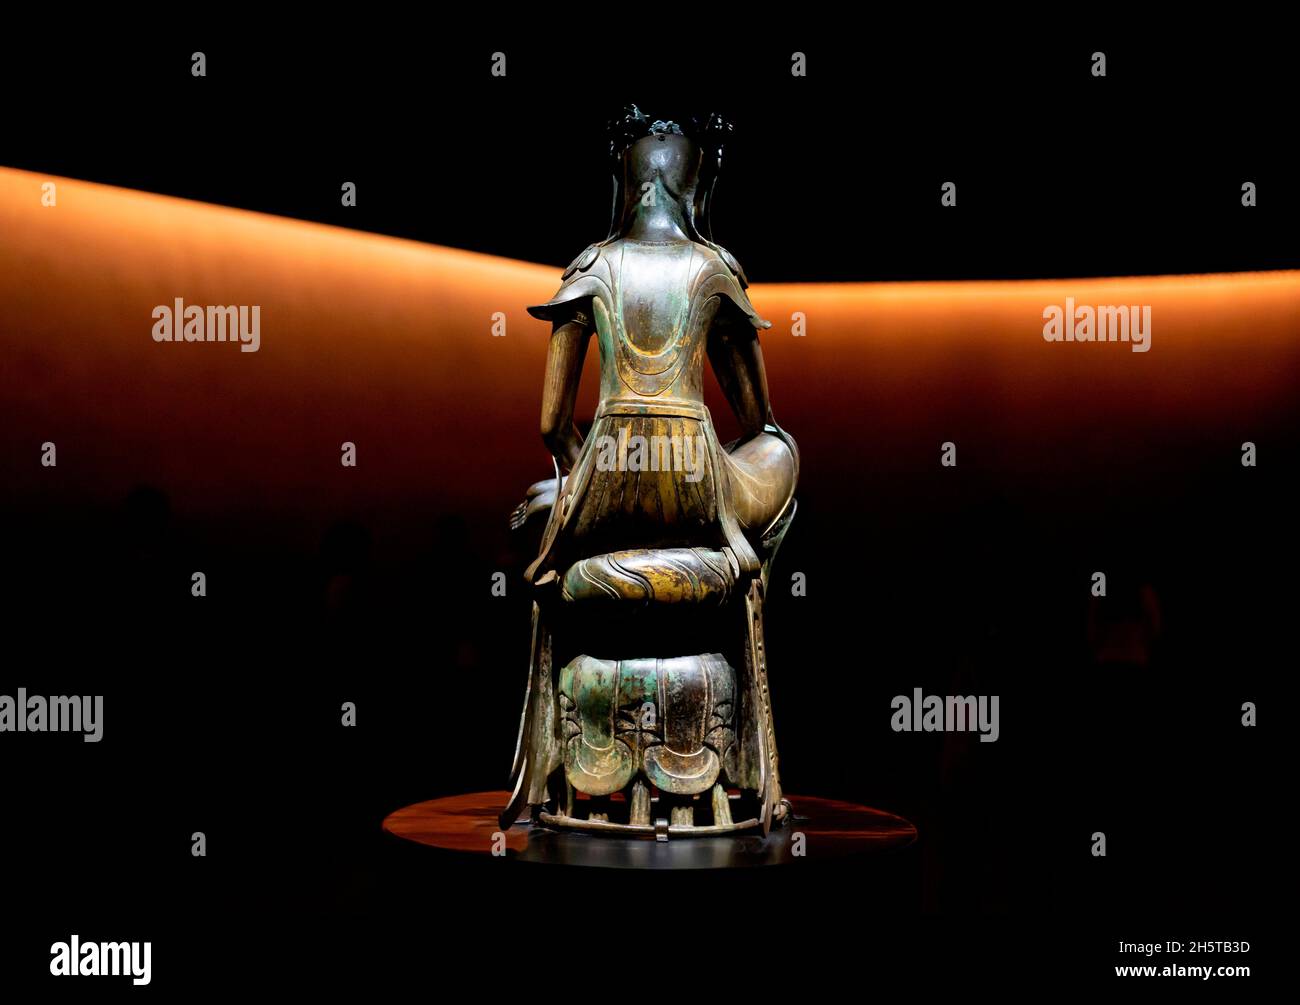 Pensive Bodhisattva, 11 novembre 2021 : Un Pensive Bodhisattva (fin du 6e siècle), Trésor national 78 de la Corée du Sud, est exposé au Musée national de Corée à Séoul, Corée du Sud.Le musée a ouvert un espace d'exposition permanent appelé « salle de contemplation tranquille » pour deux statues bouddhistes en bronze doré de Bodhisattva (Bangasayusang), qui sont des trésors nationaux.Credit: Lee Jae-won/AFLO/Alay Live News Banque D'Images